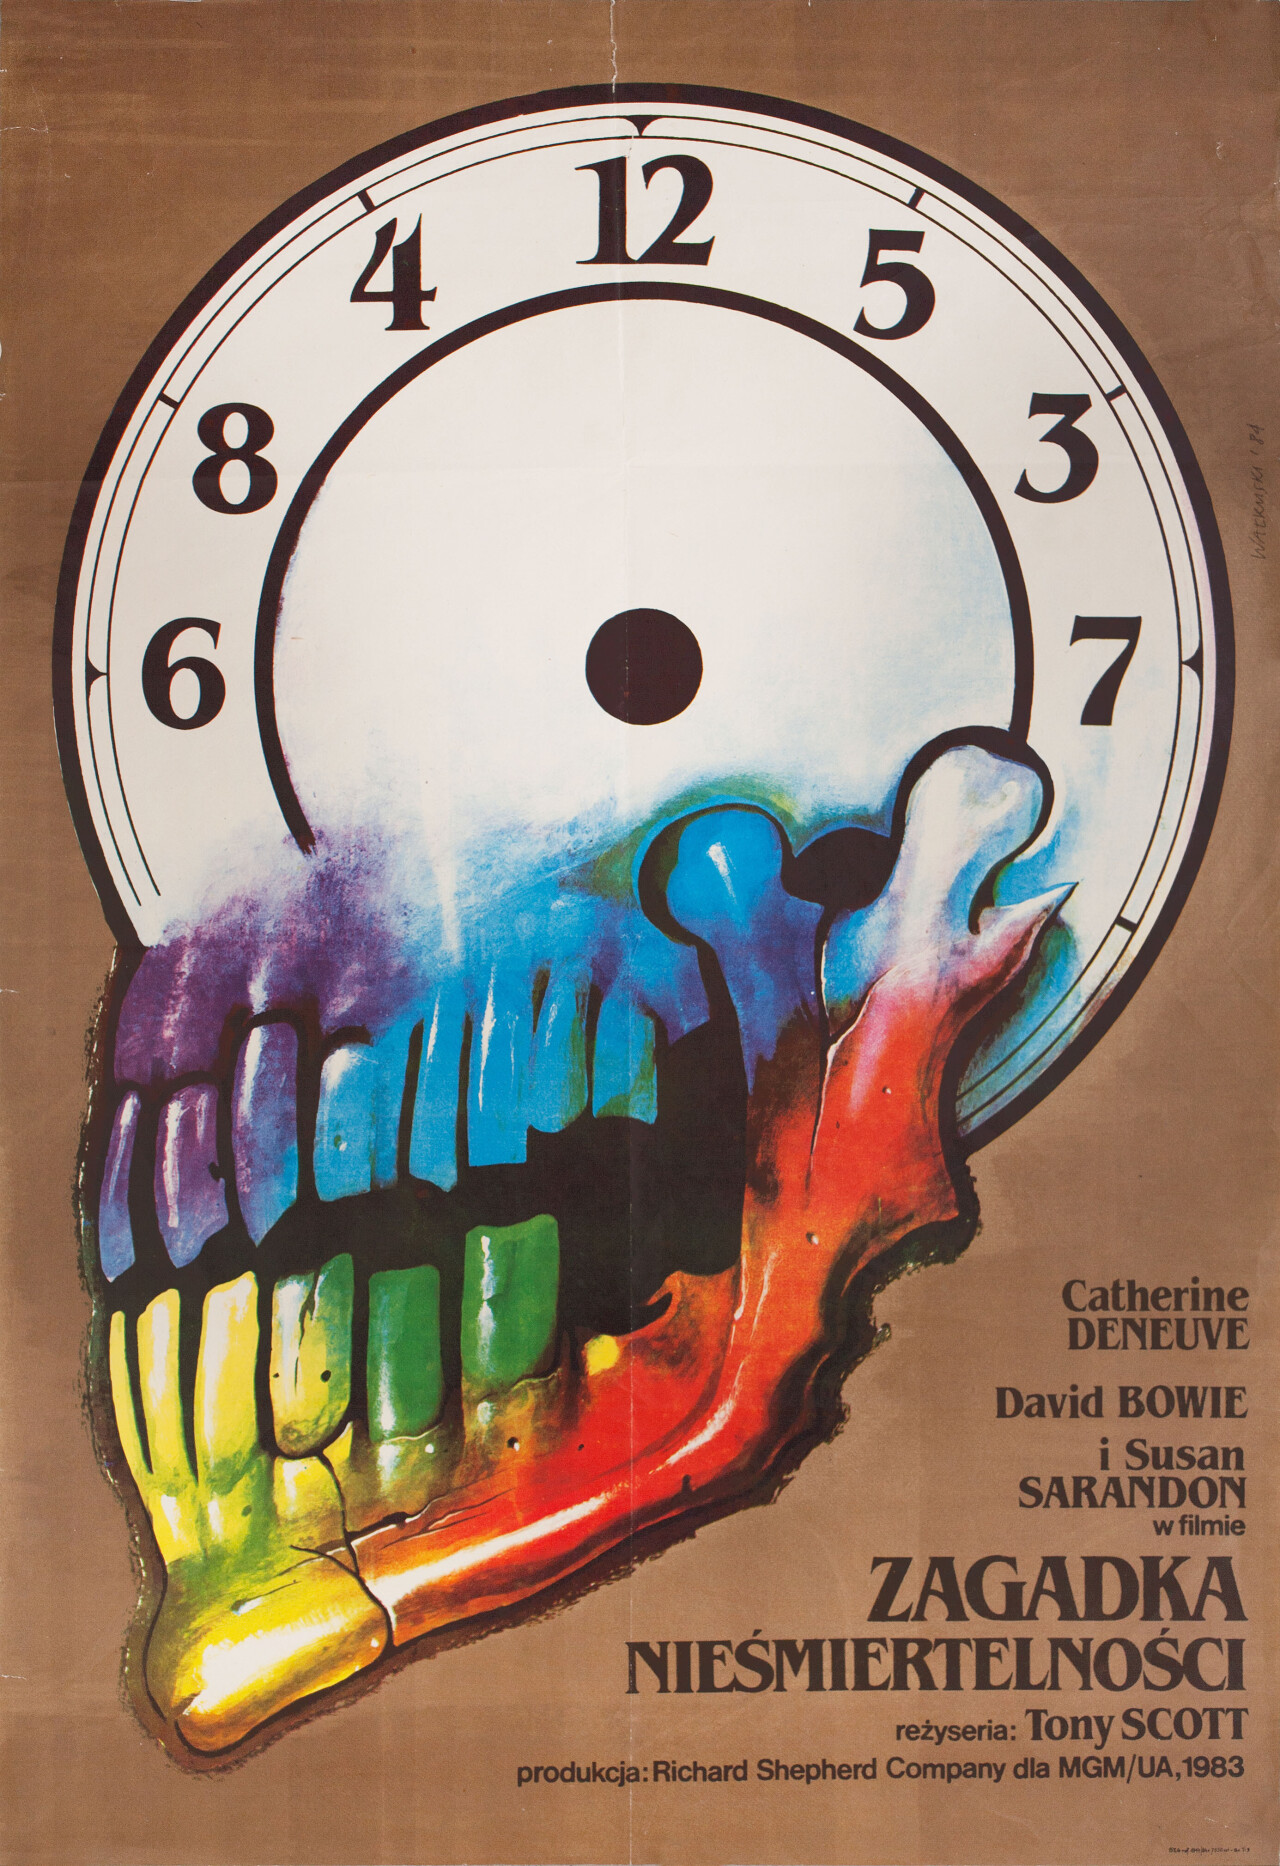 Голод (The Hunger, 1983), режиссёр Тони Скотт, польский постер к фильму, автор Веслав Валкуски (ужасы, 1984 год)